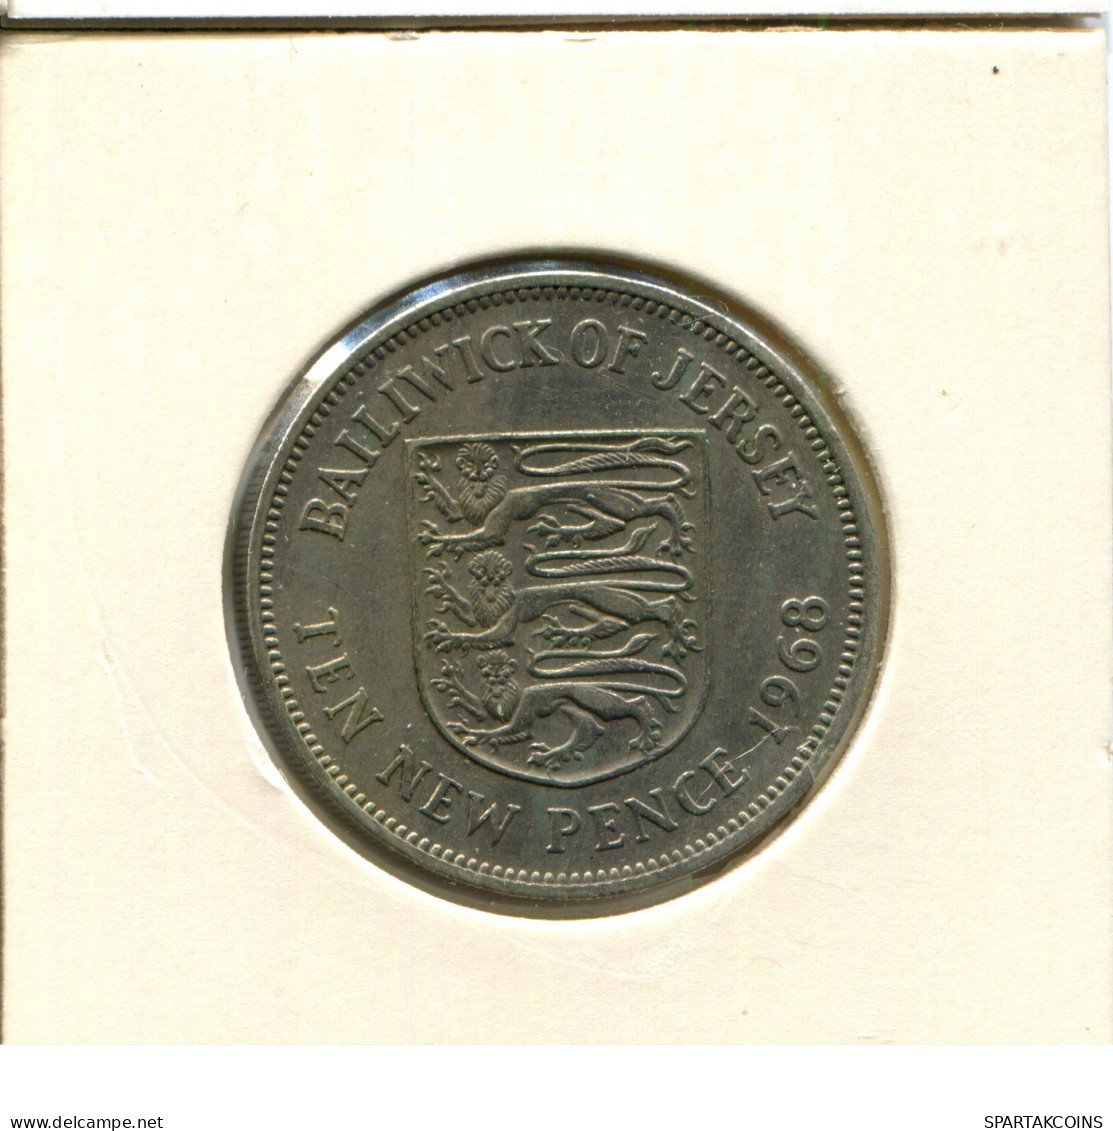 10 PENCE 1968 GUERNSEY Coin #AX072.U.A - Guernsey